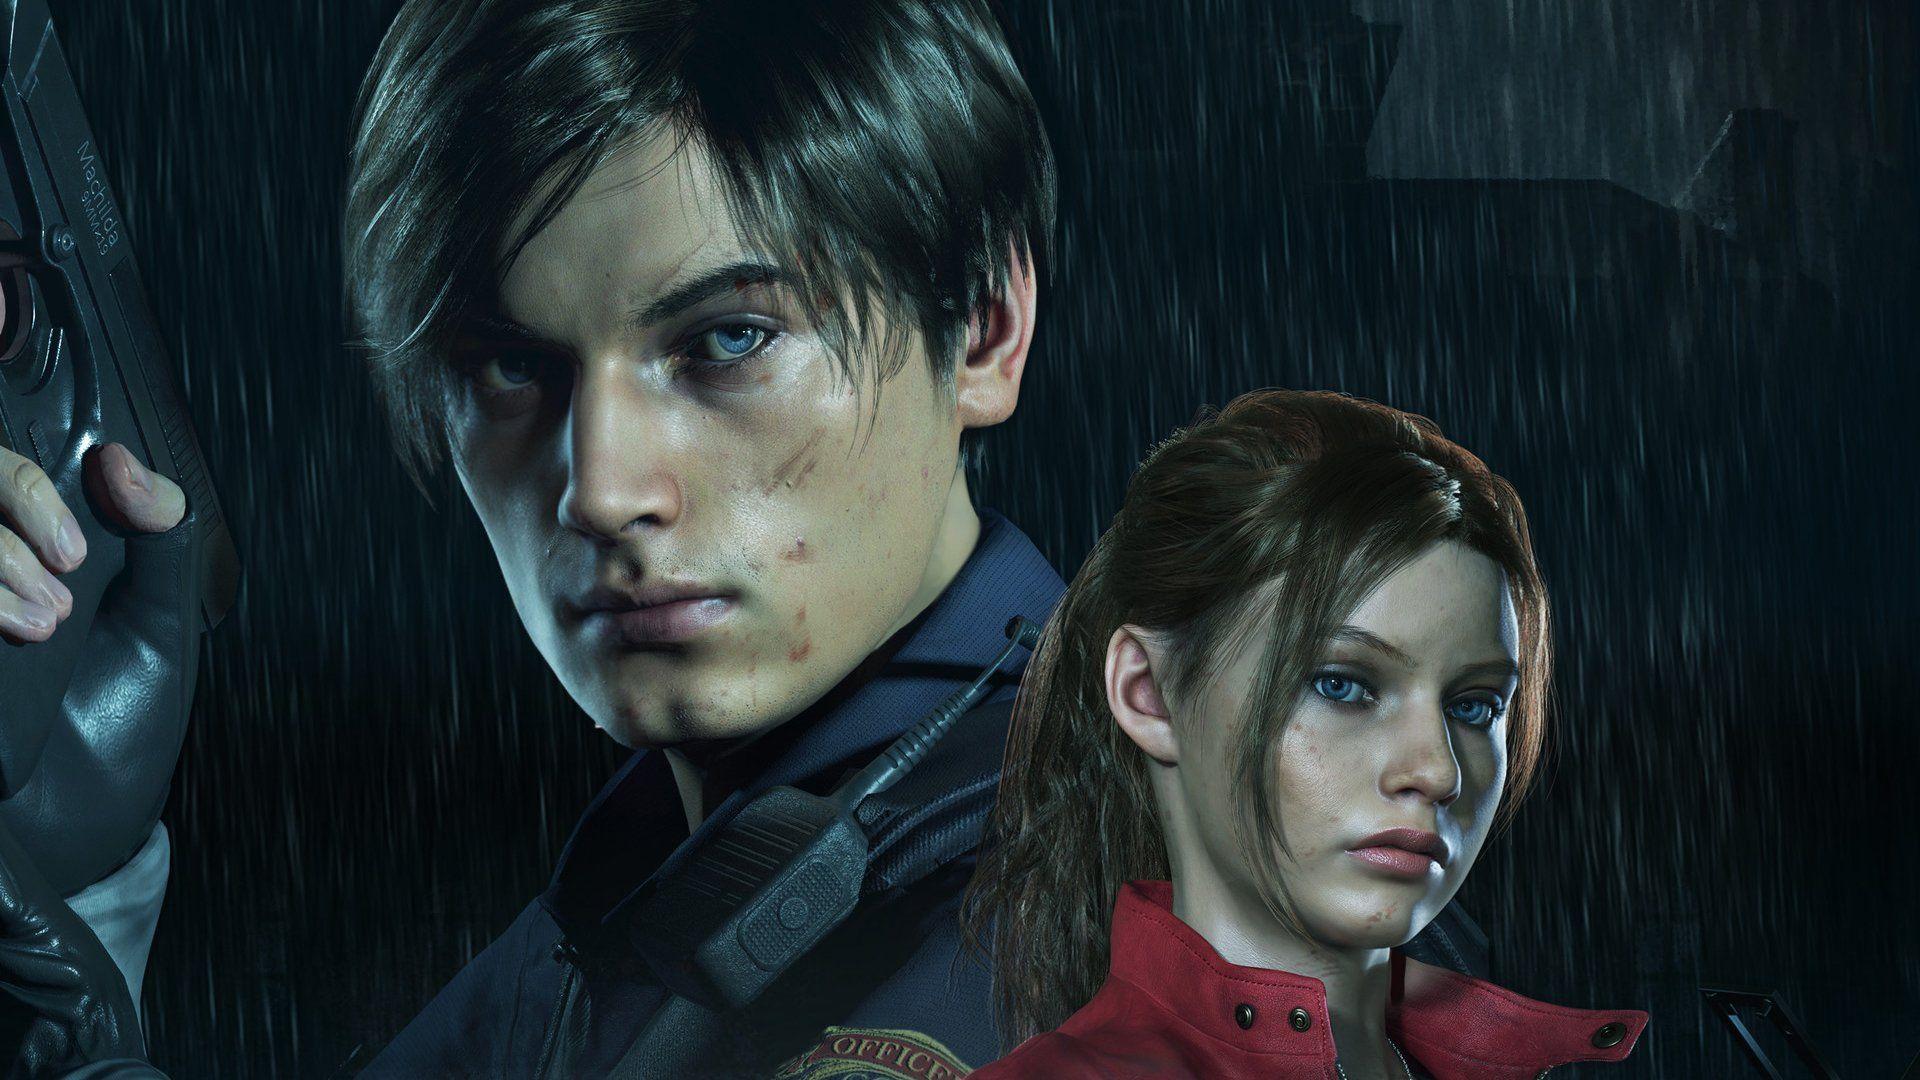 Resident Evil 2 Remake Wallpaper Image. Resident evil